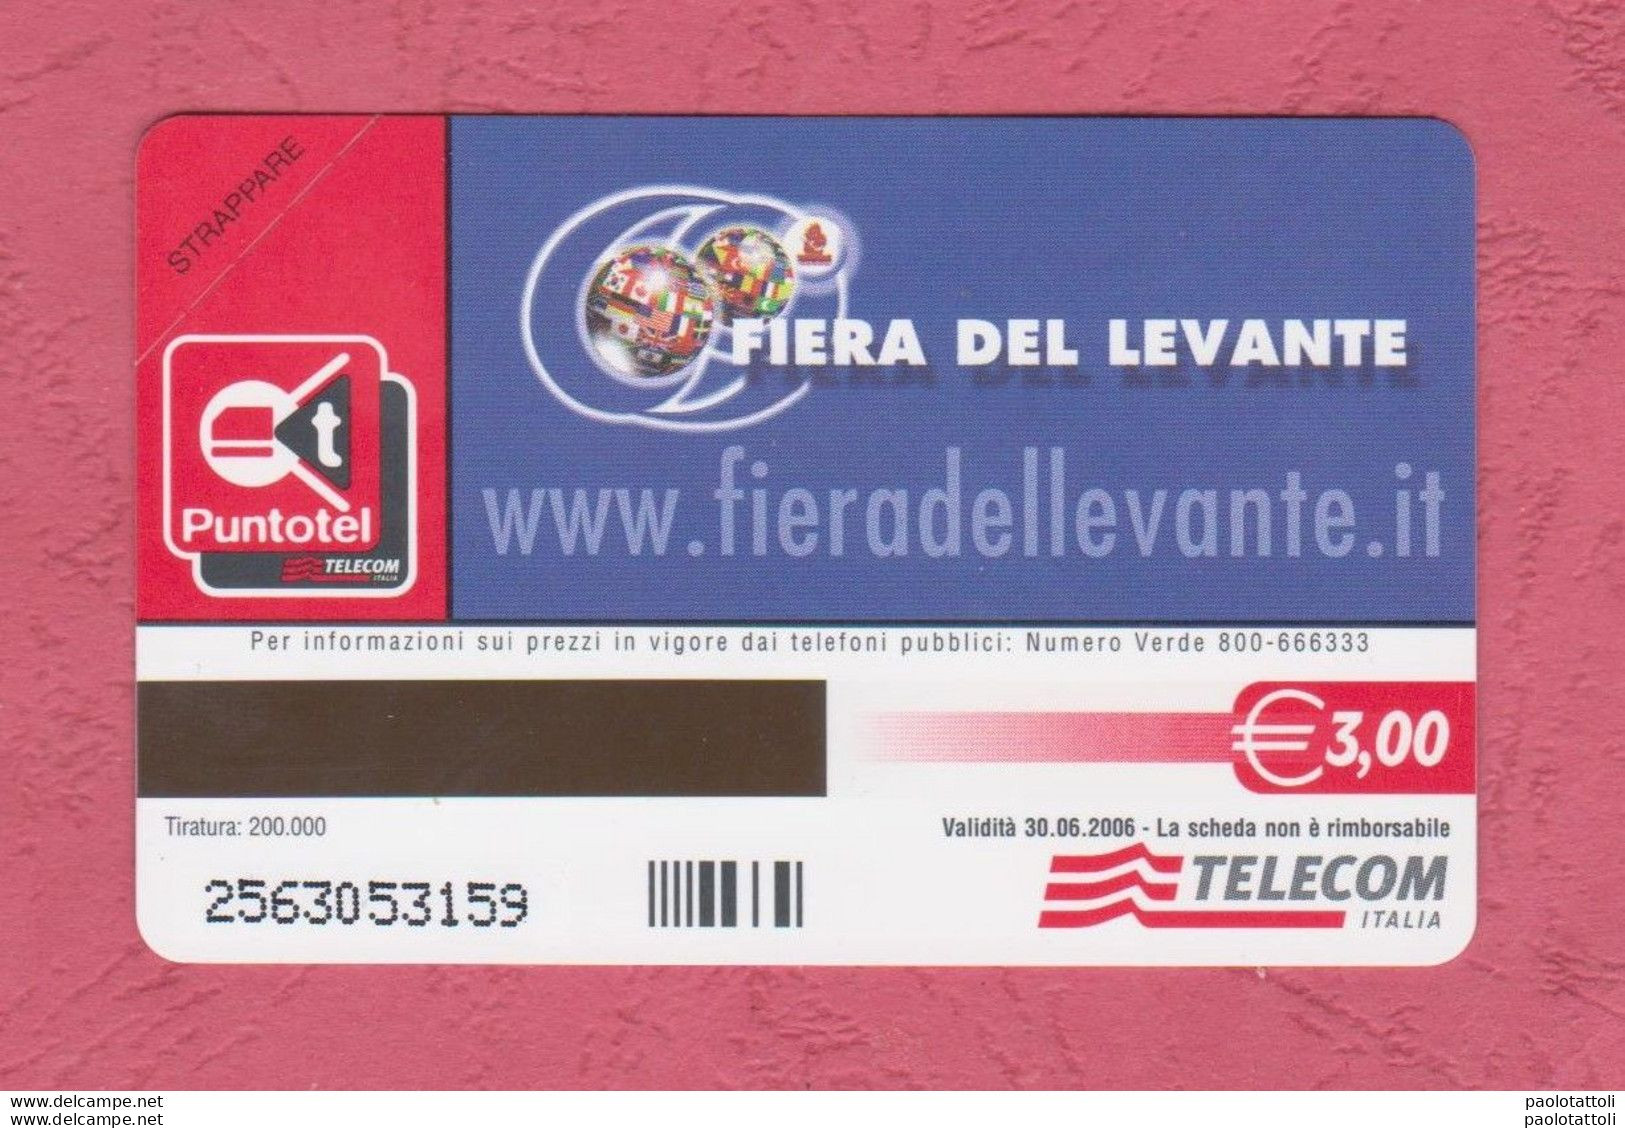 Italia, Italy- New, Nuova. Pre-Paid Phoone Card. Telecom. Bari; Fiera Del Levante, Sett;2005. Exp. 30.06.2006 - Públicas Especiales O Conmemorativas